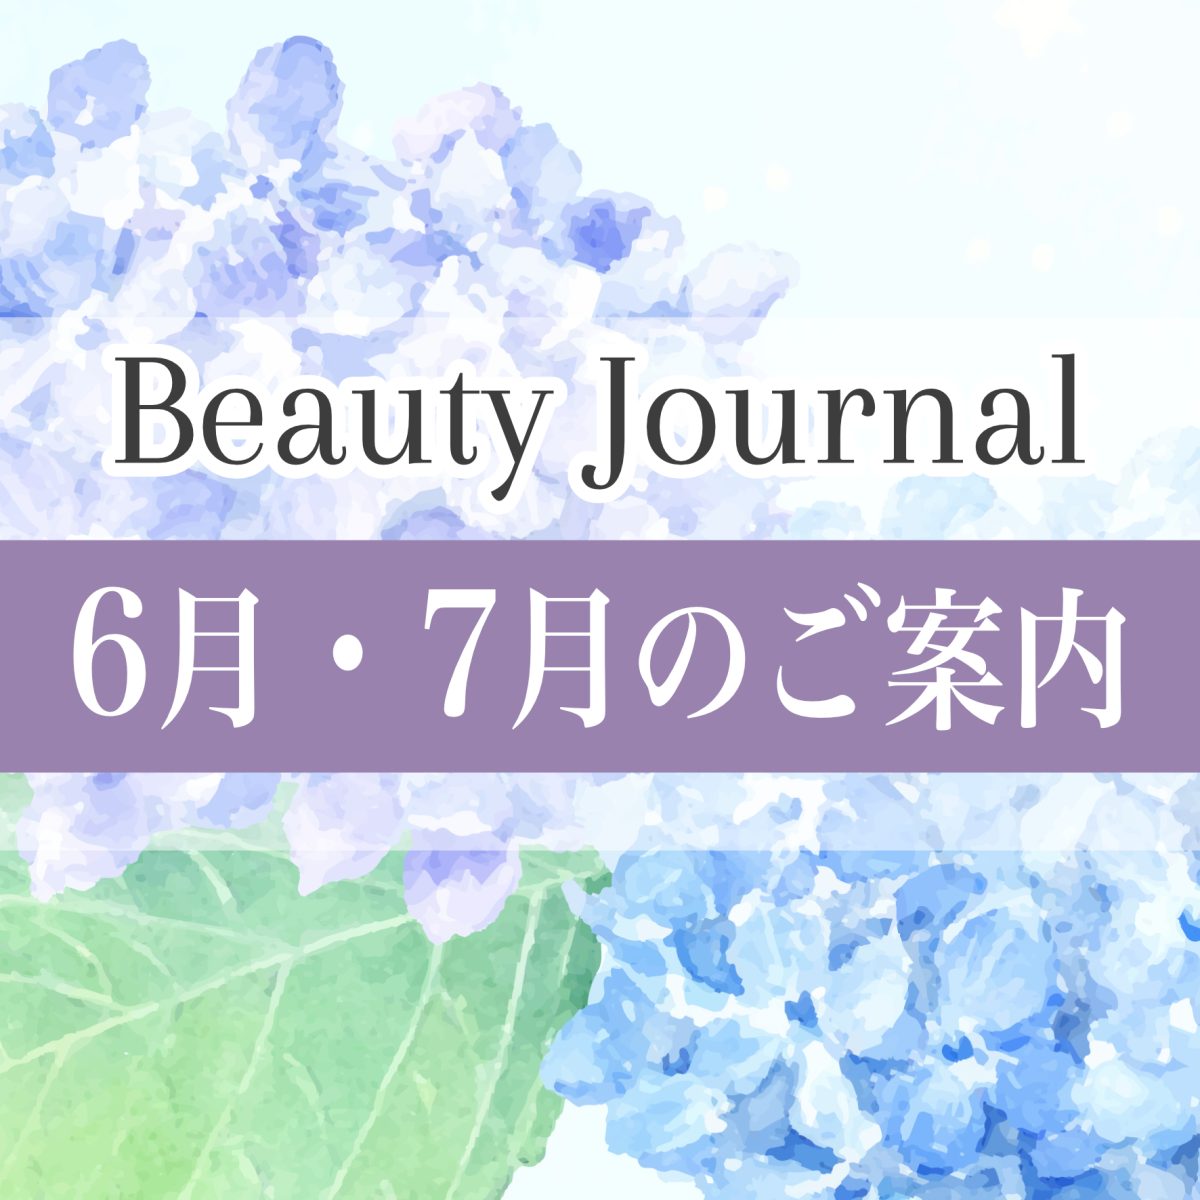 【 6・7月のご案内】TADACHIYA Beauty Journal